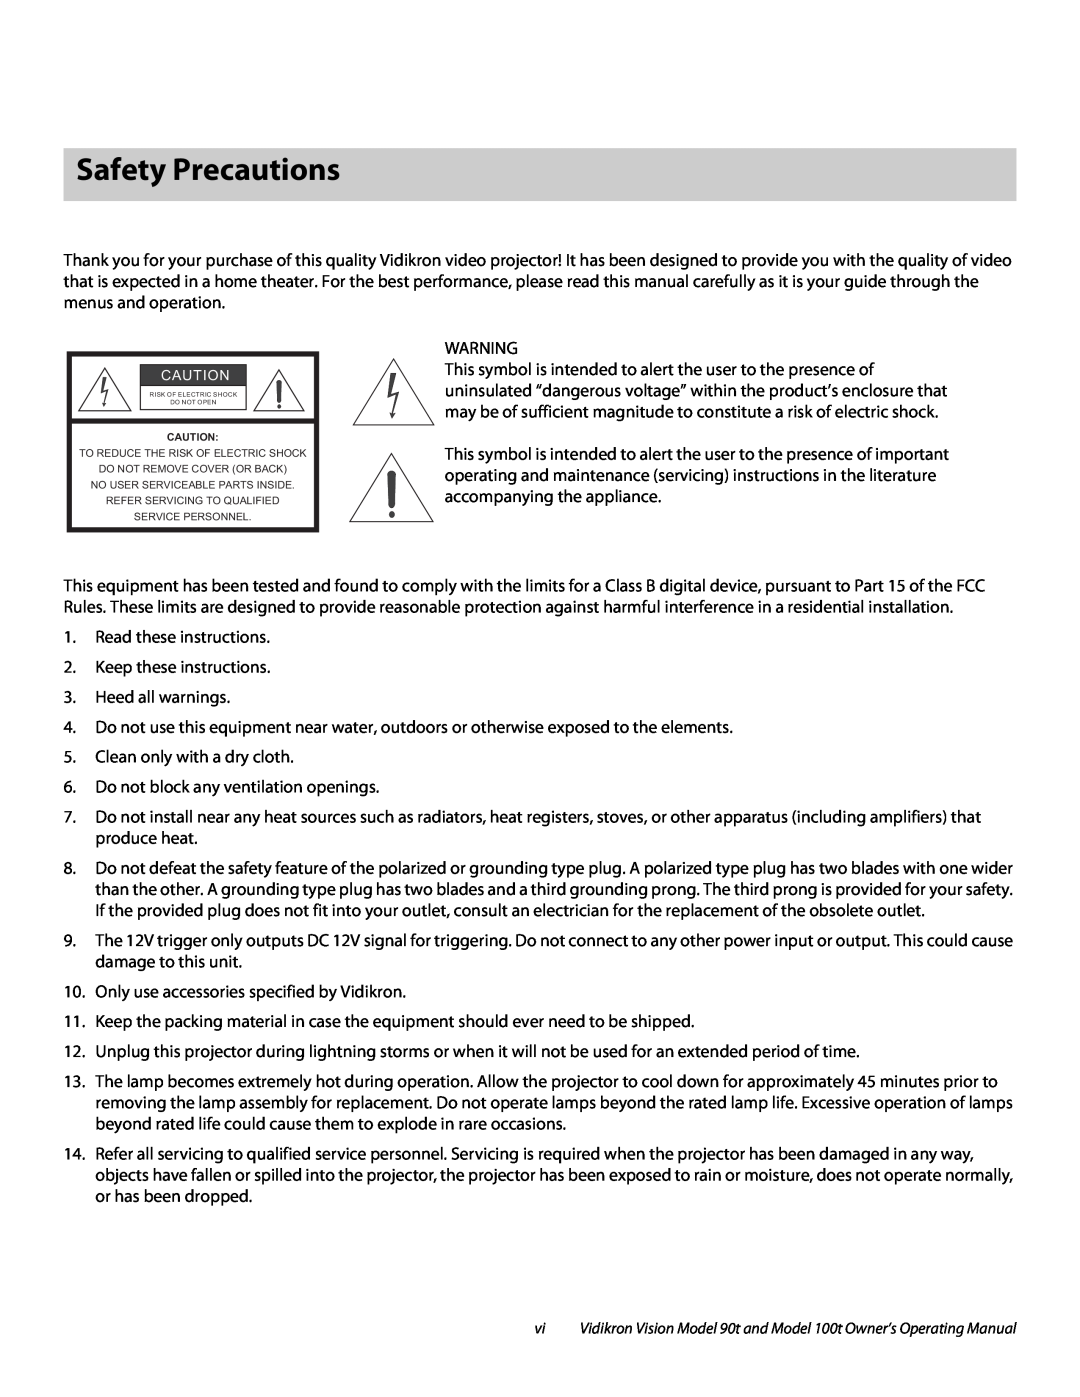 Vidikron Vision 90t, Vision 100t manual Safety Precautions 